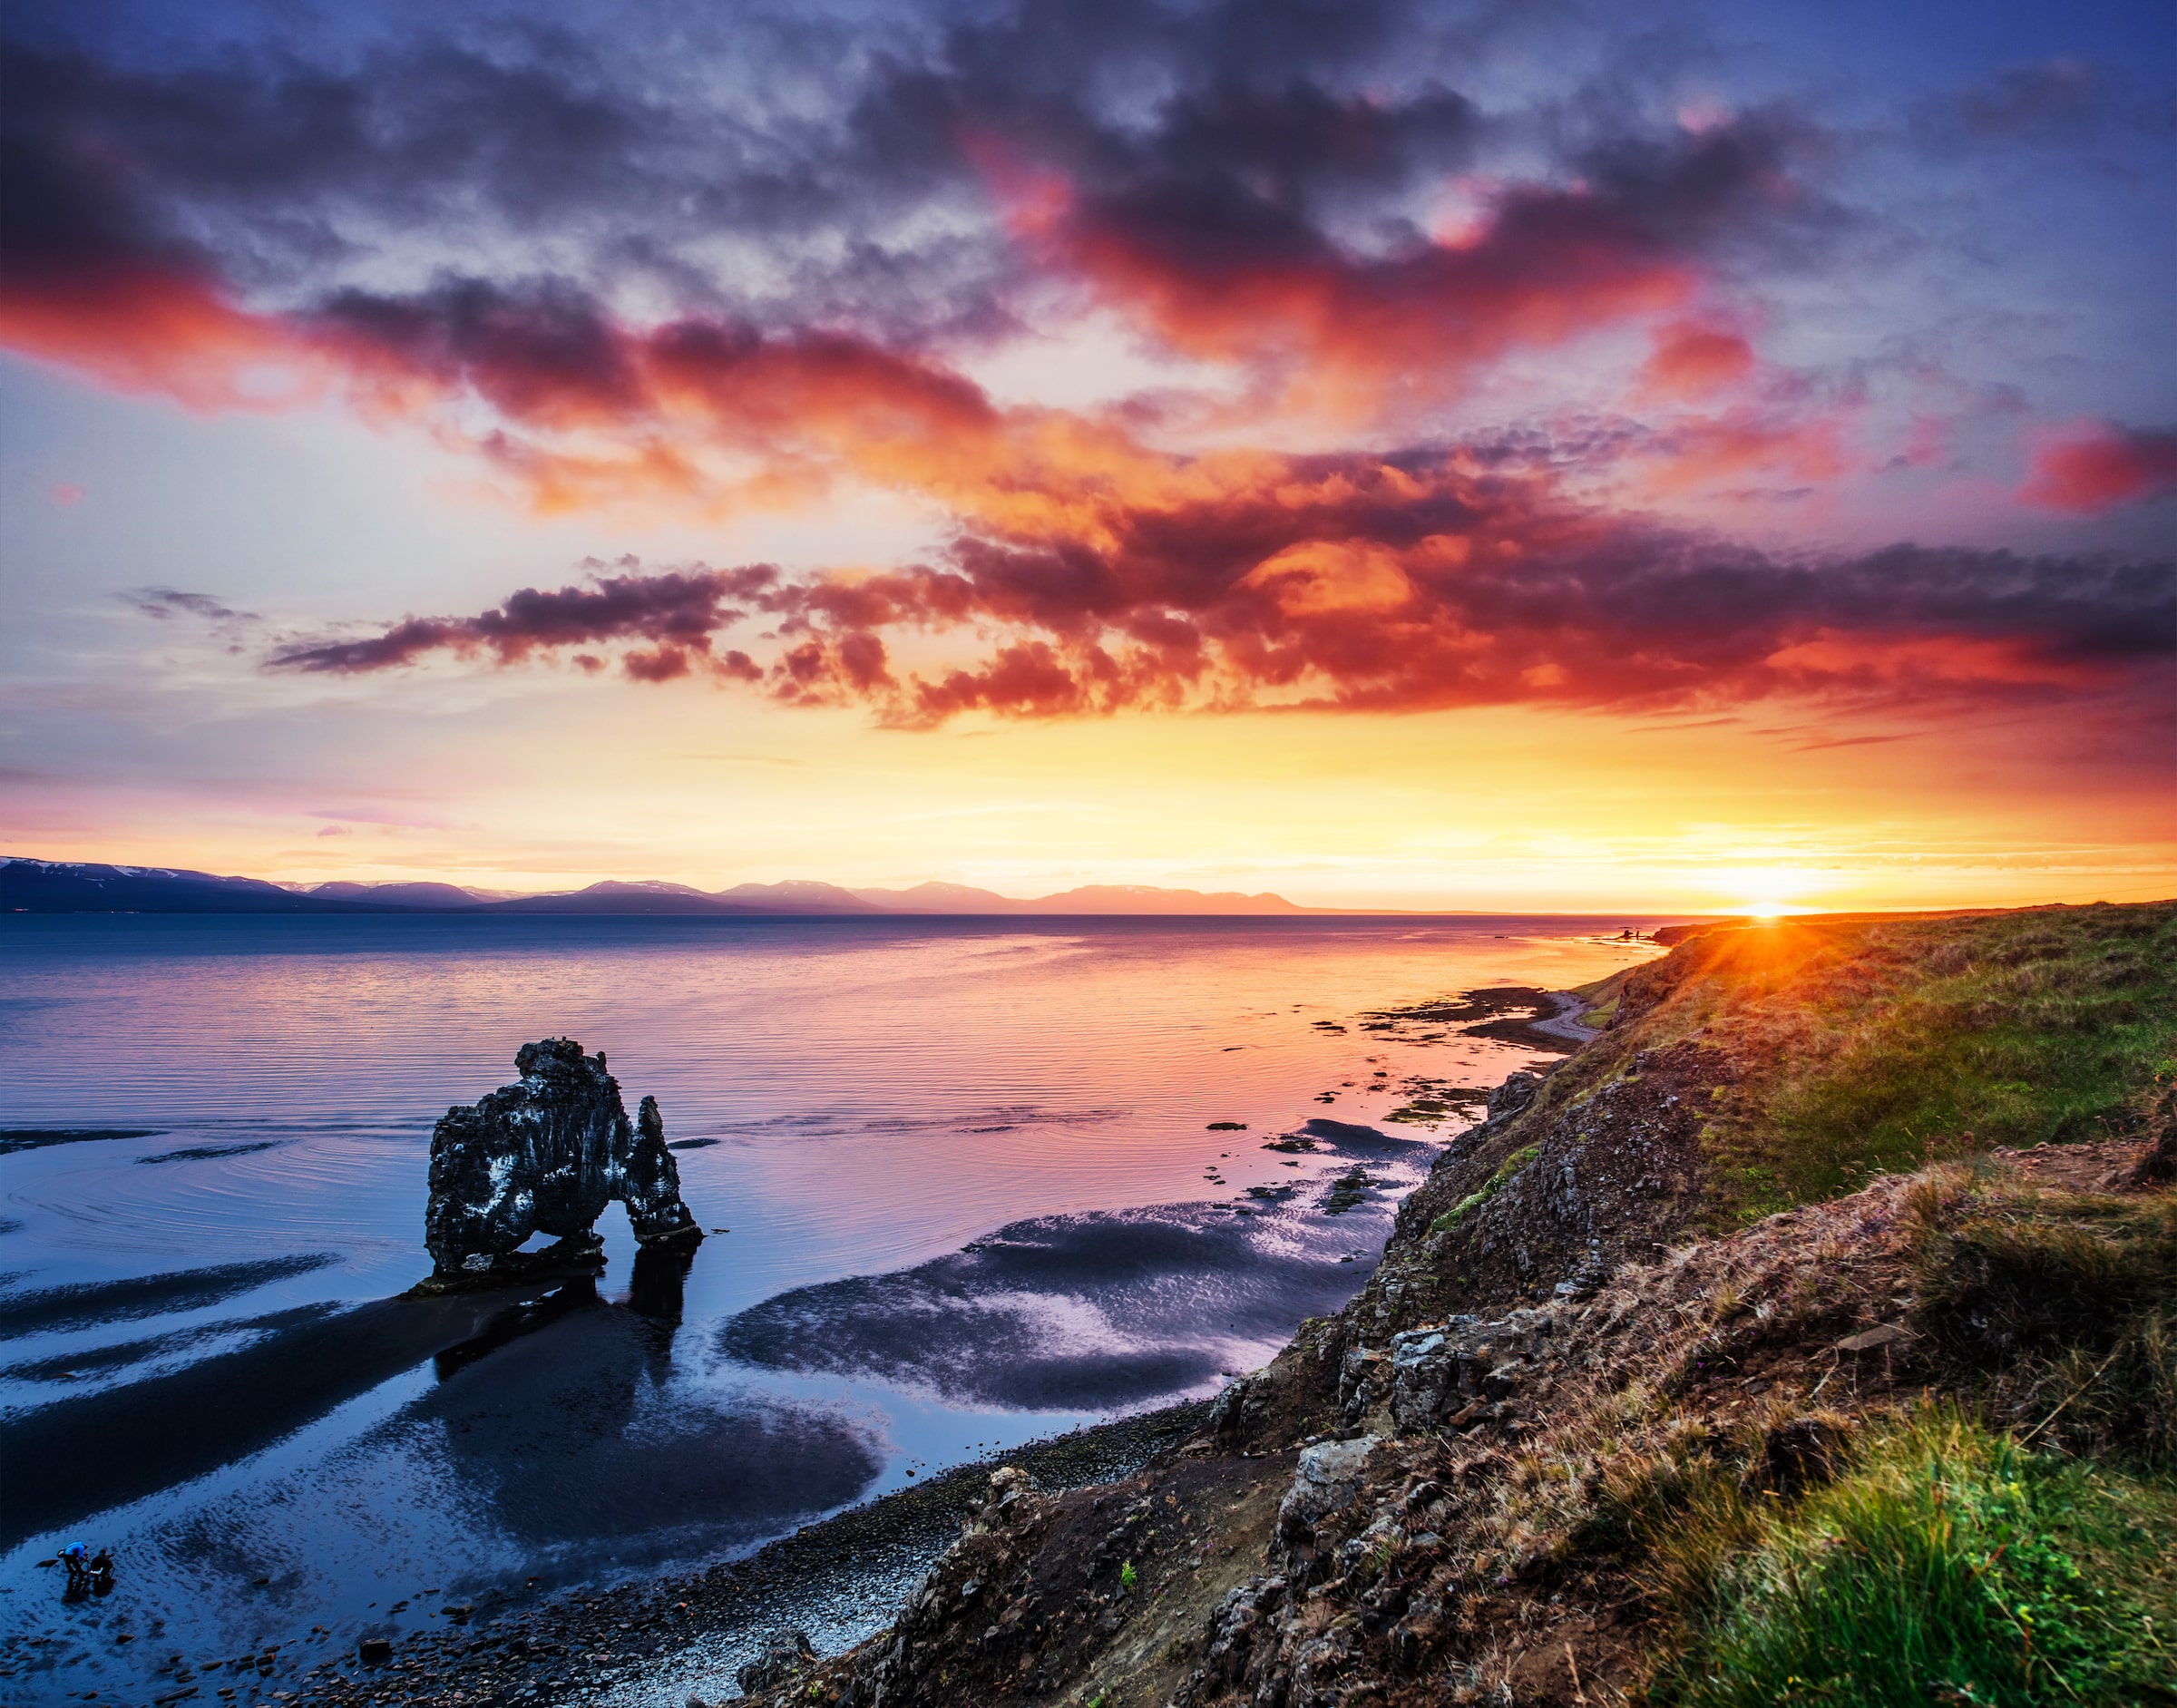 Hvitserkur Rock dans le nord de l'Islande se reflète dans l'eau de mer au coucher du soleil.